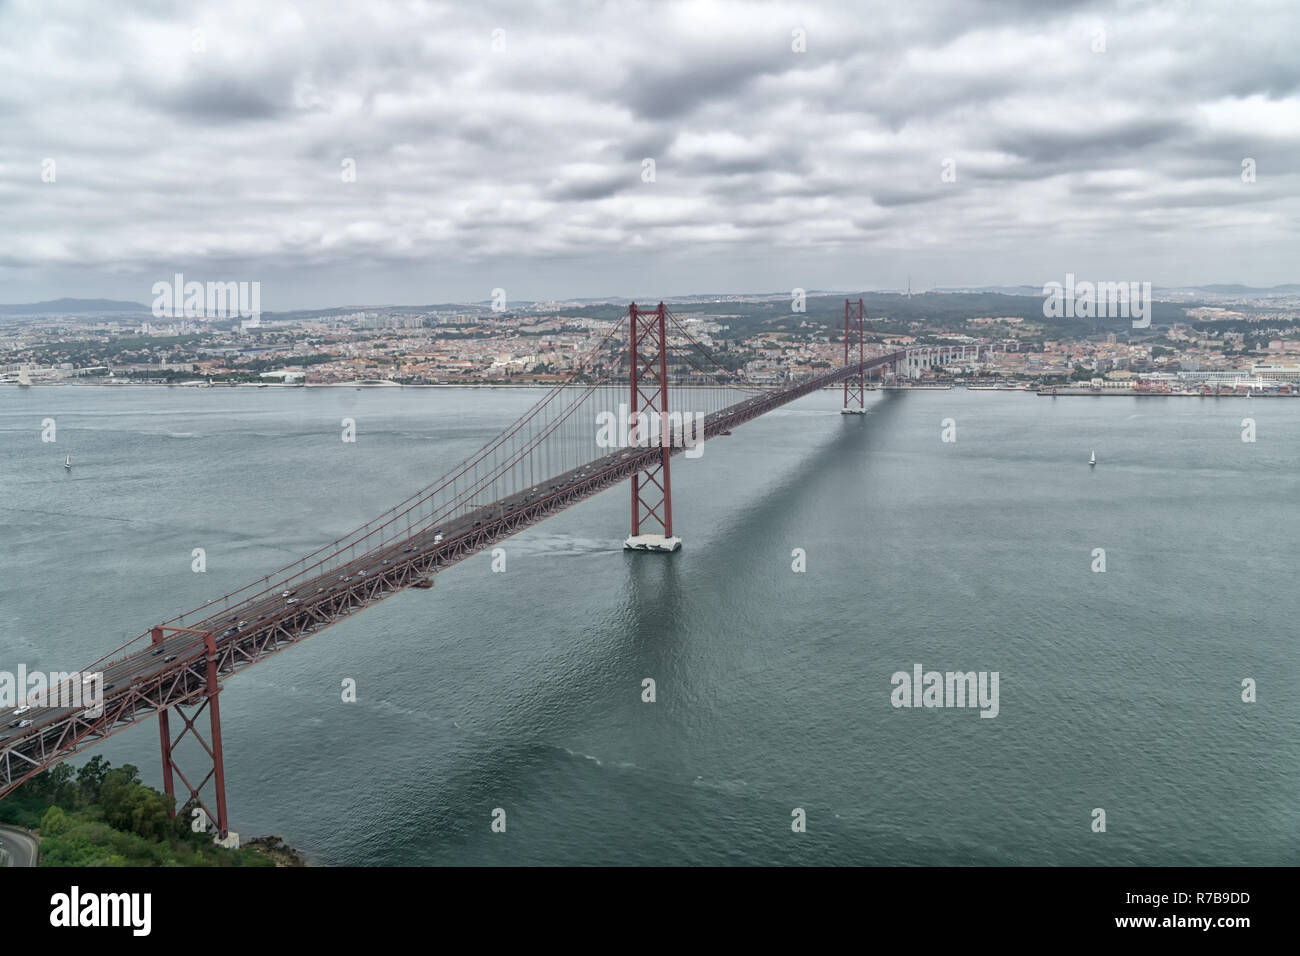 25 avril célèbre Pont sur le Tage à Lisbonne, Portugal sur une journée nuageuse. Vue aérienne de la gauche (sud) de la Banque mondiale sur le Tage. Banque D'Images